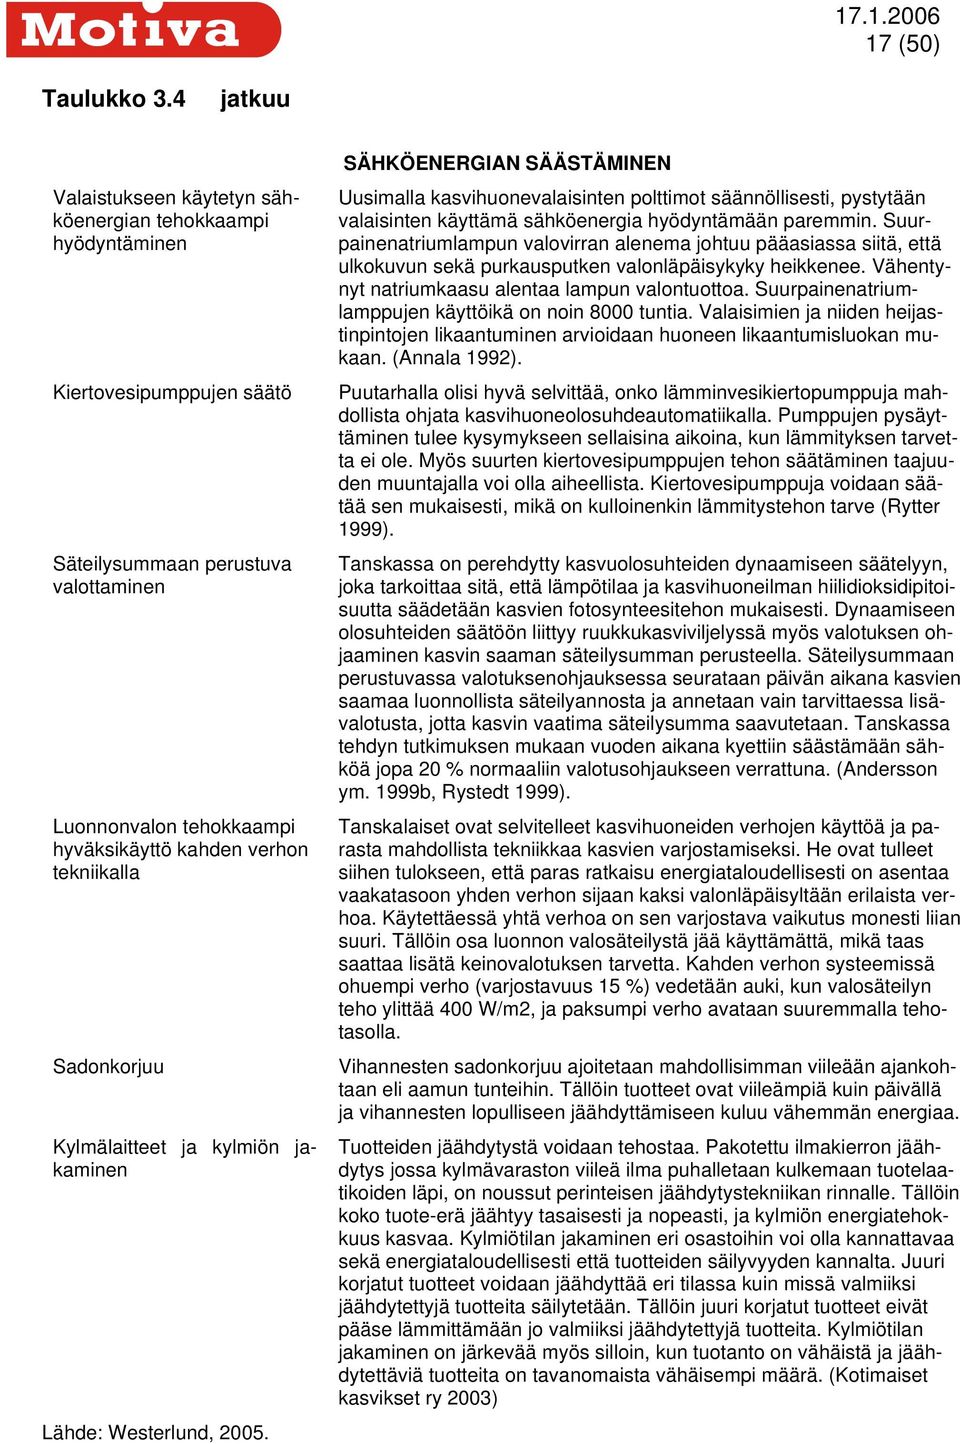 tekniikalla Sadonkorjuu Kylmälaitteet ja kylmiön jakaminen Lähde: Westerlund, 2005.